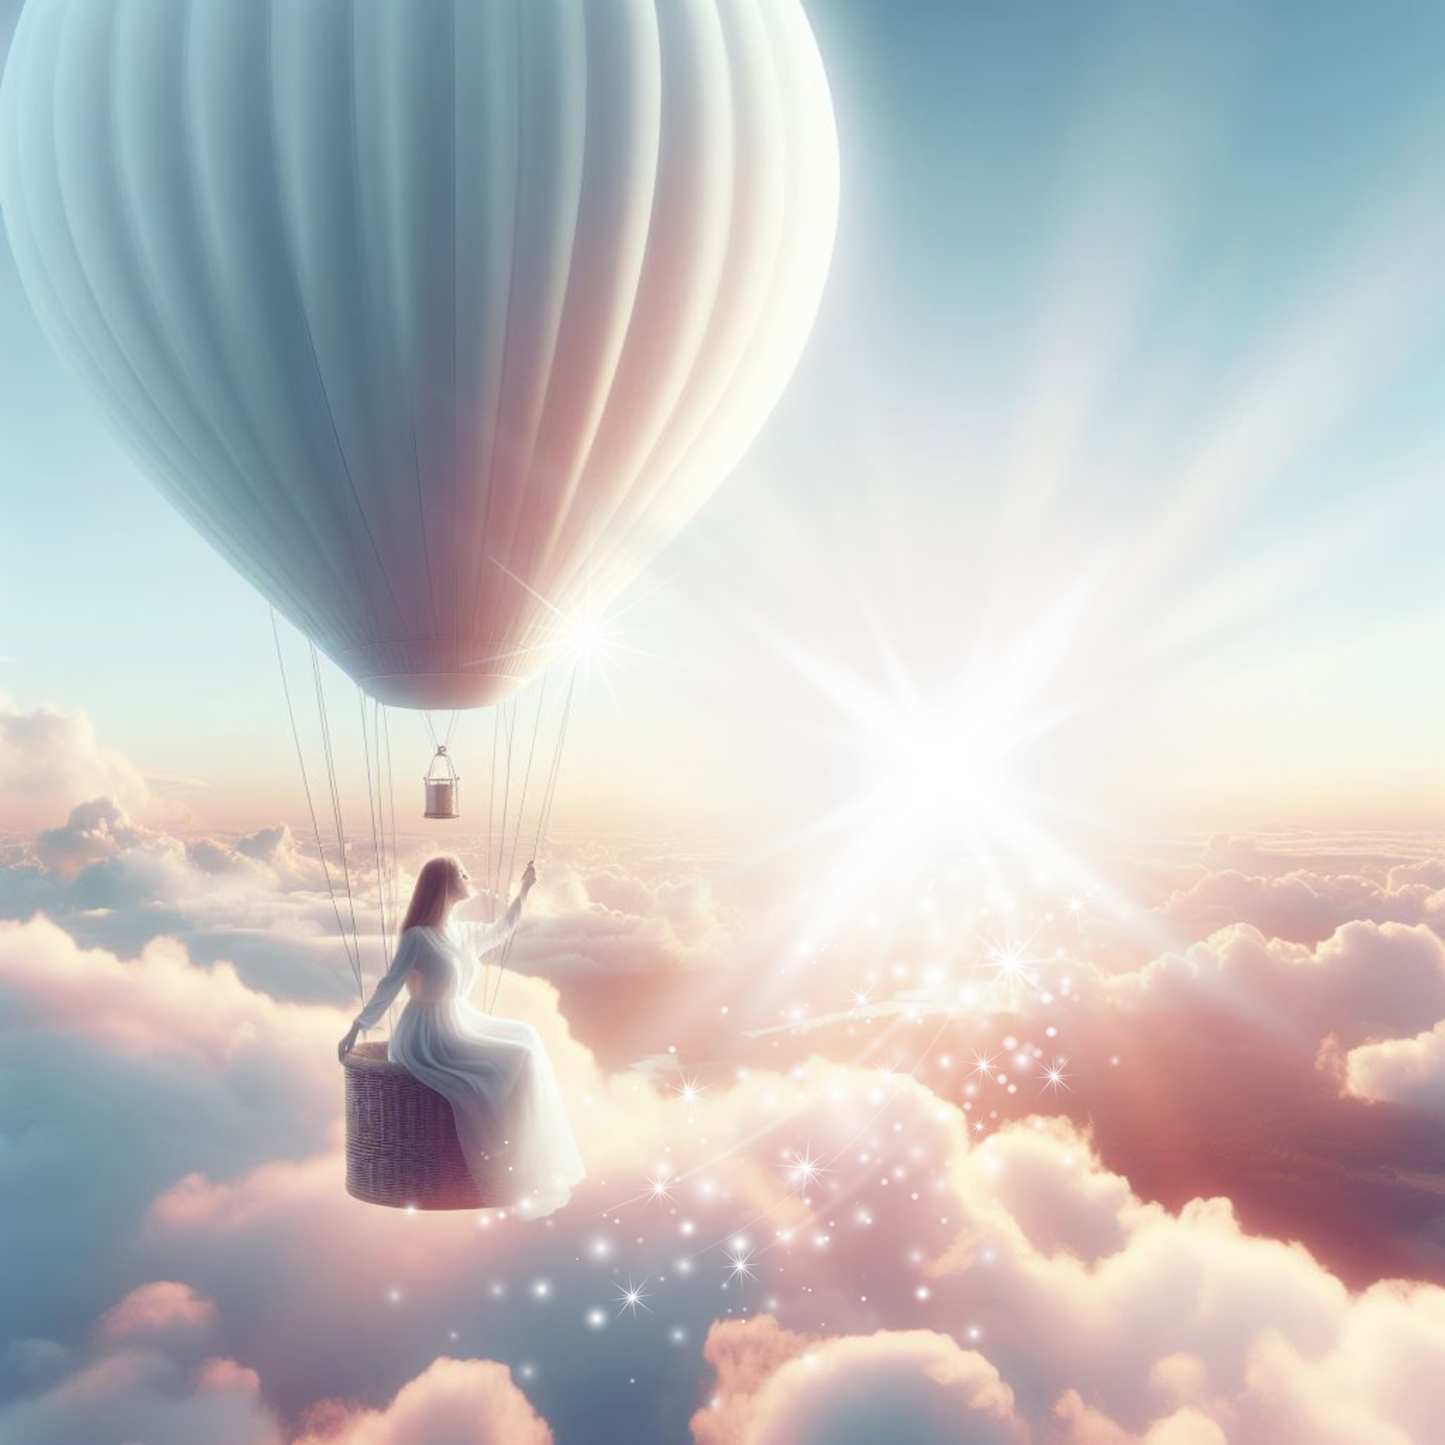 Ballonfahrt. Eine Frau sitzt am Rand des Heißluftballons und lässt die Füße in den Wolken schweben.